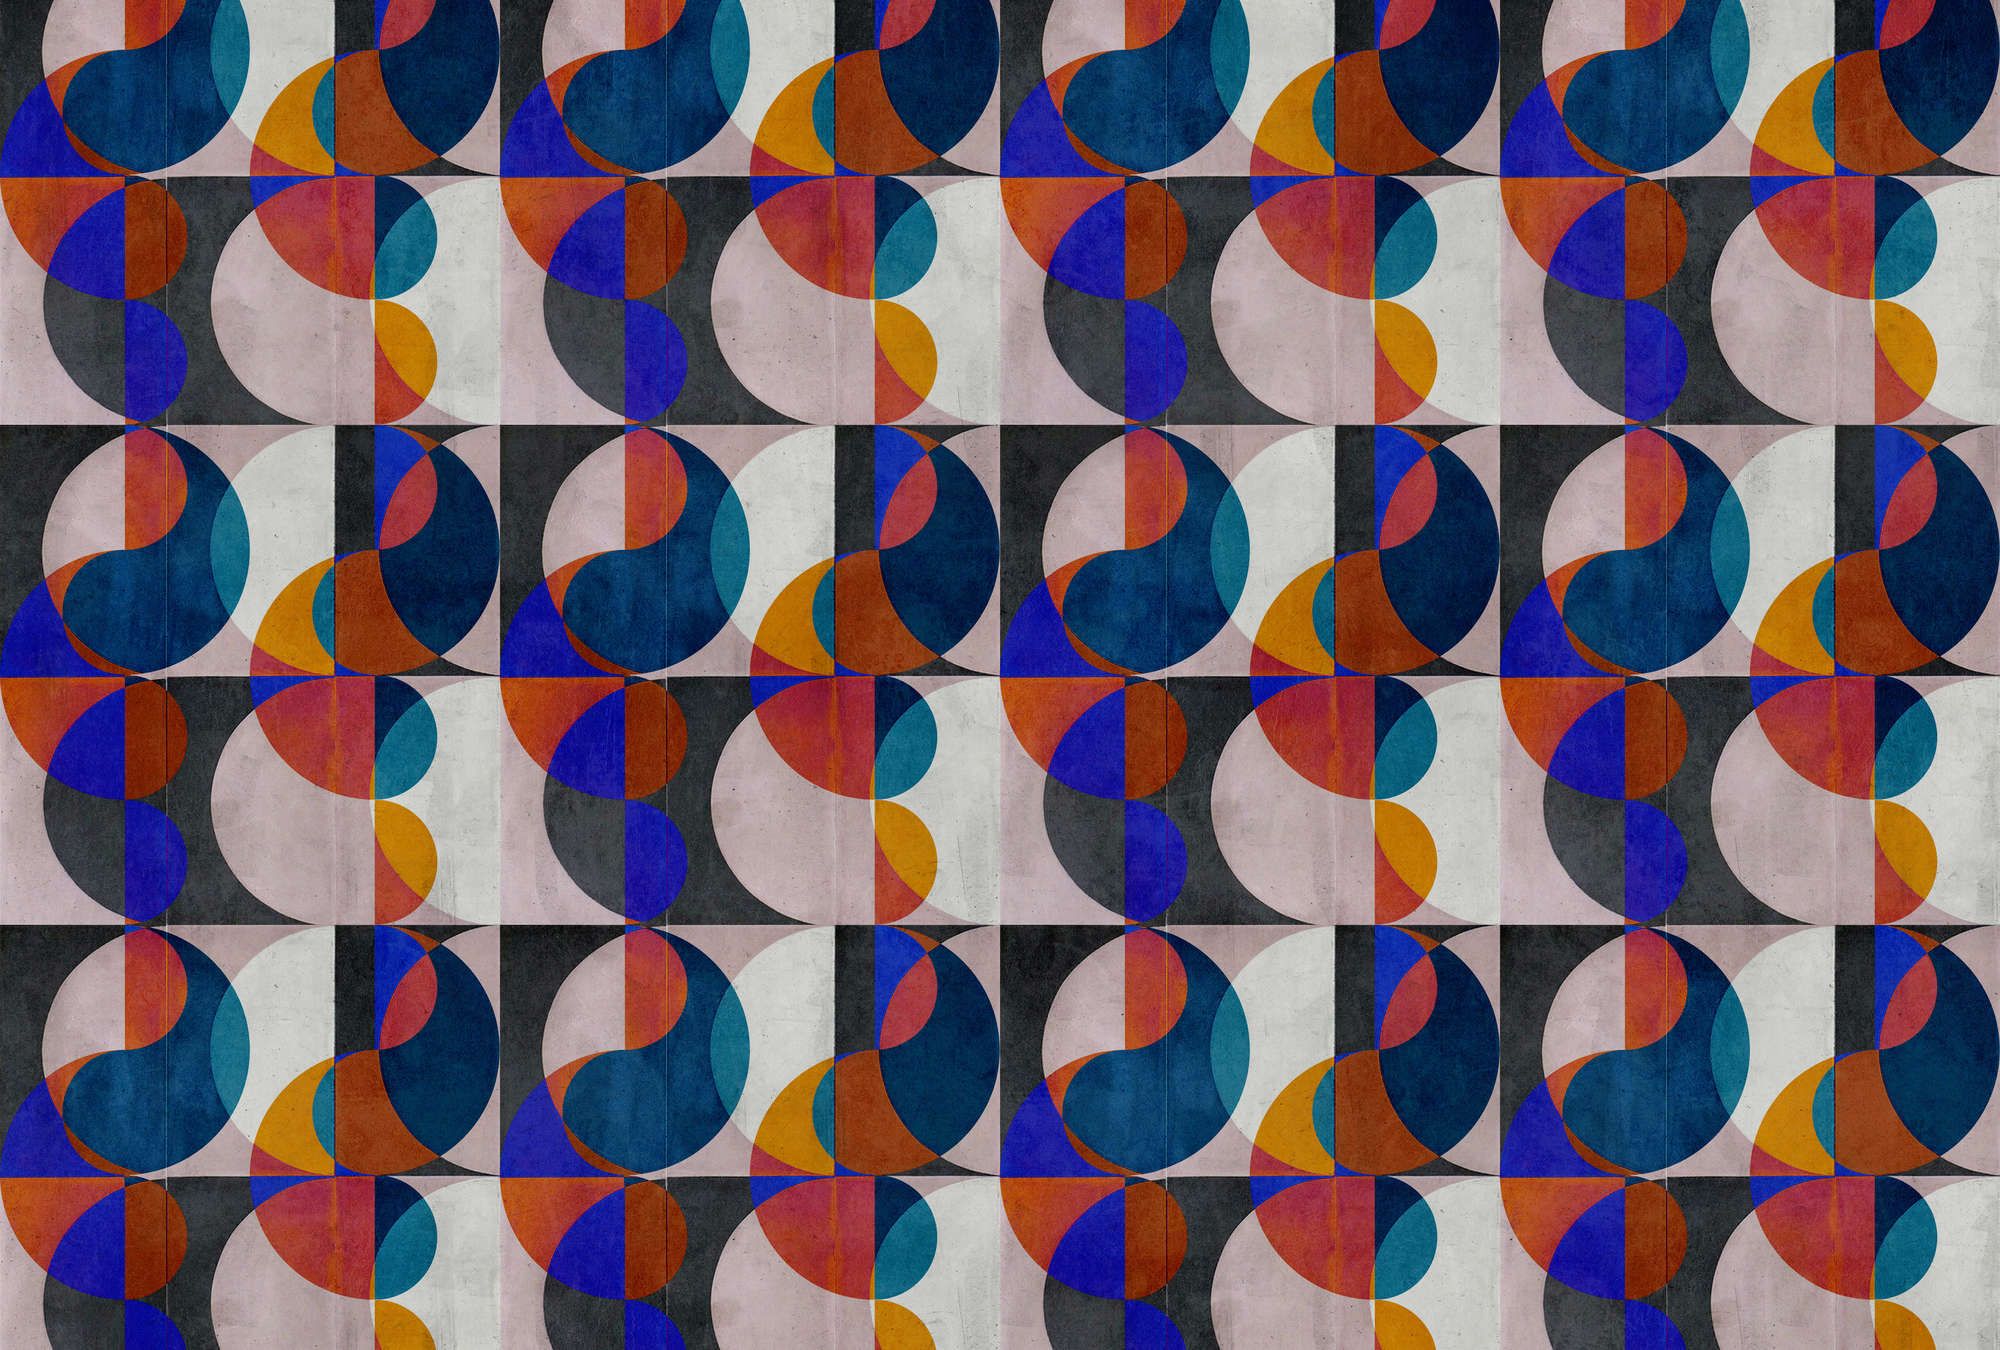             Papel pintado fotográfico »mia« - motivo retro abstracto sobre textura de yeso hormigón - colorido | tejido sin tejer textura ligera
        